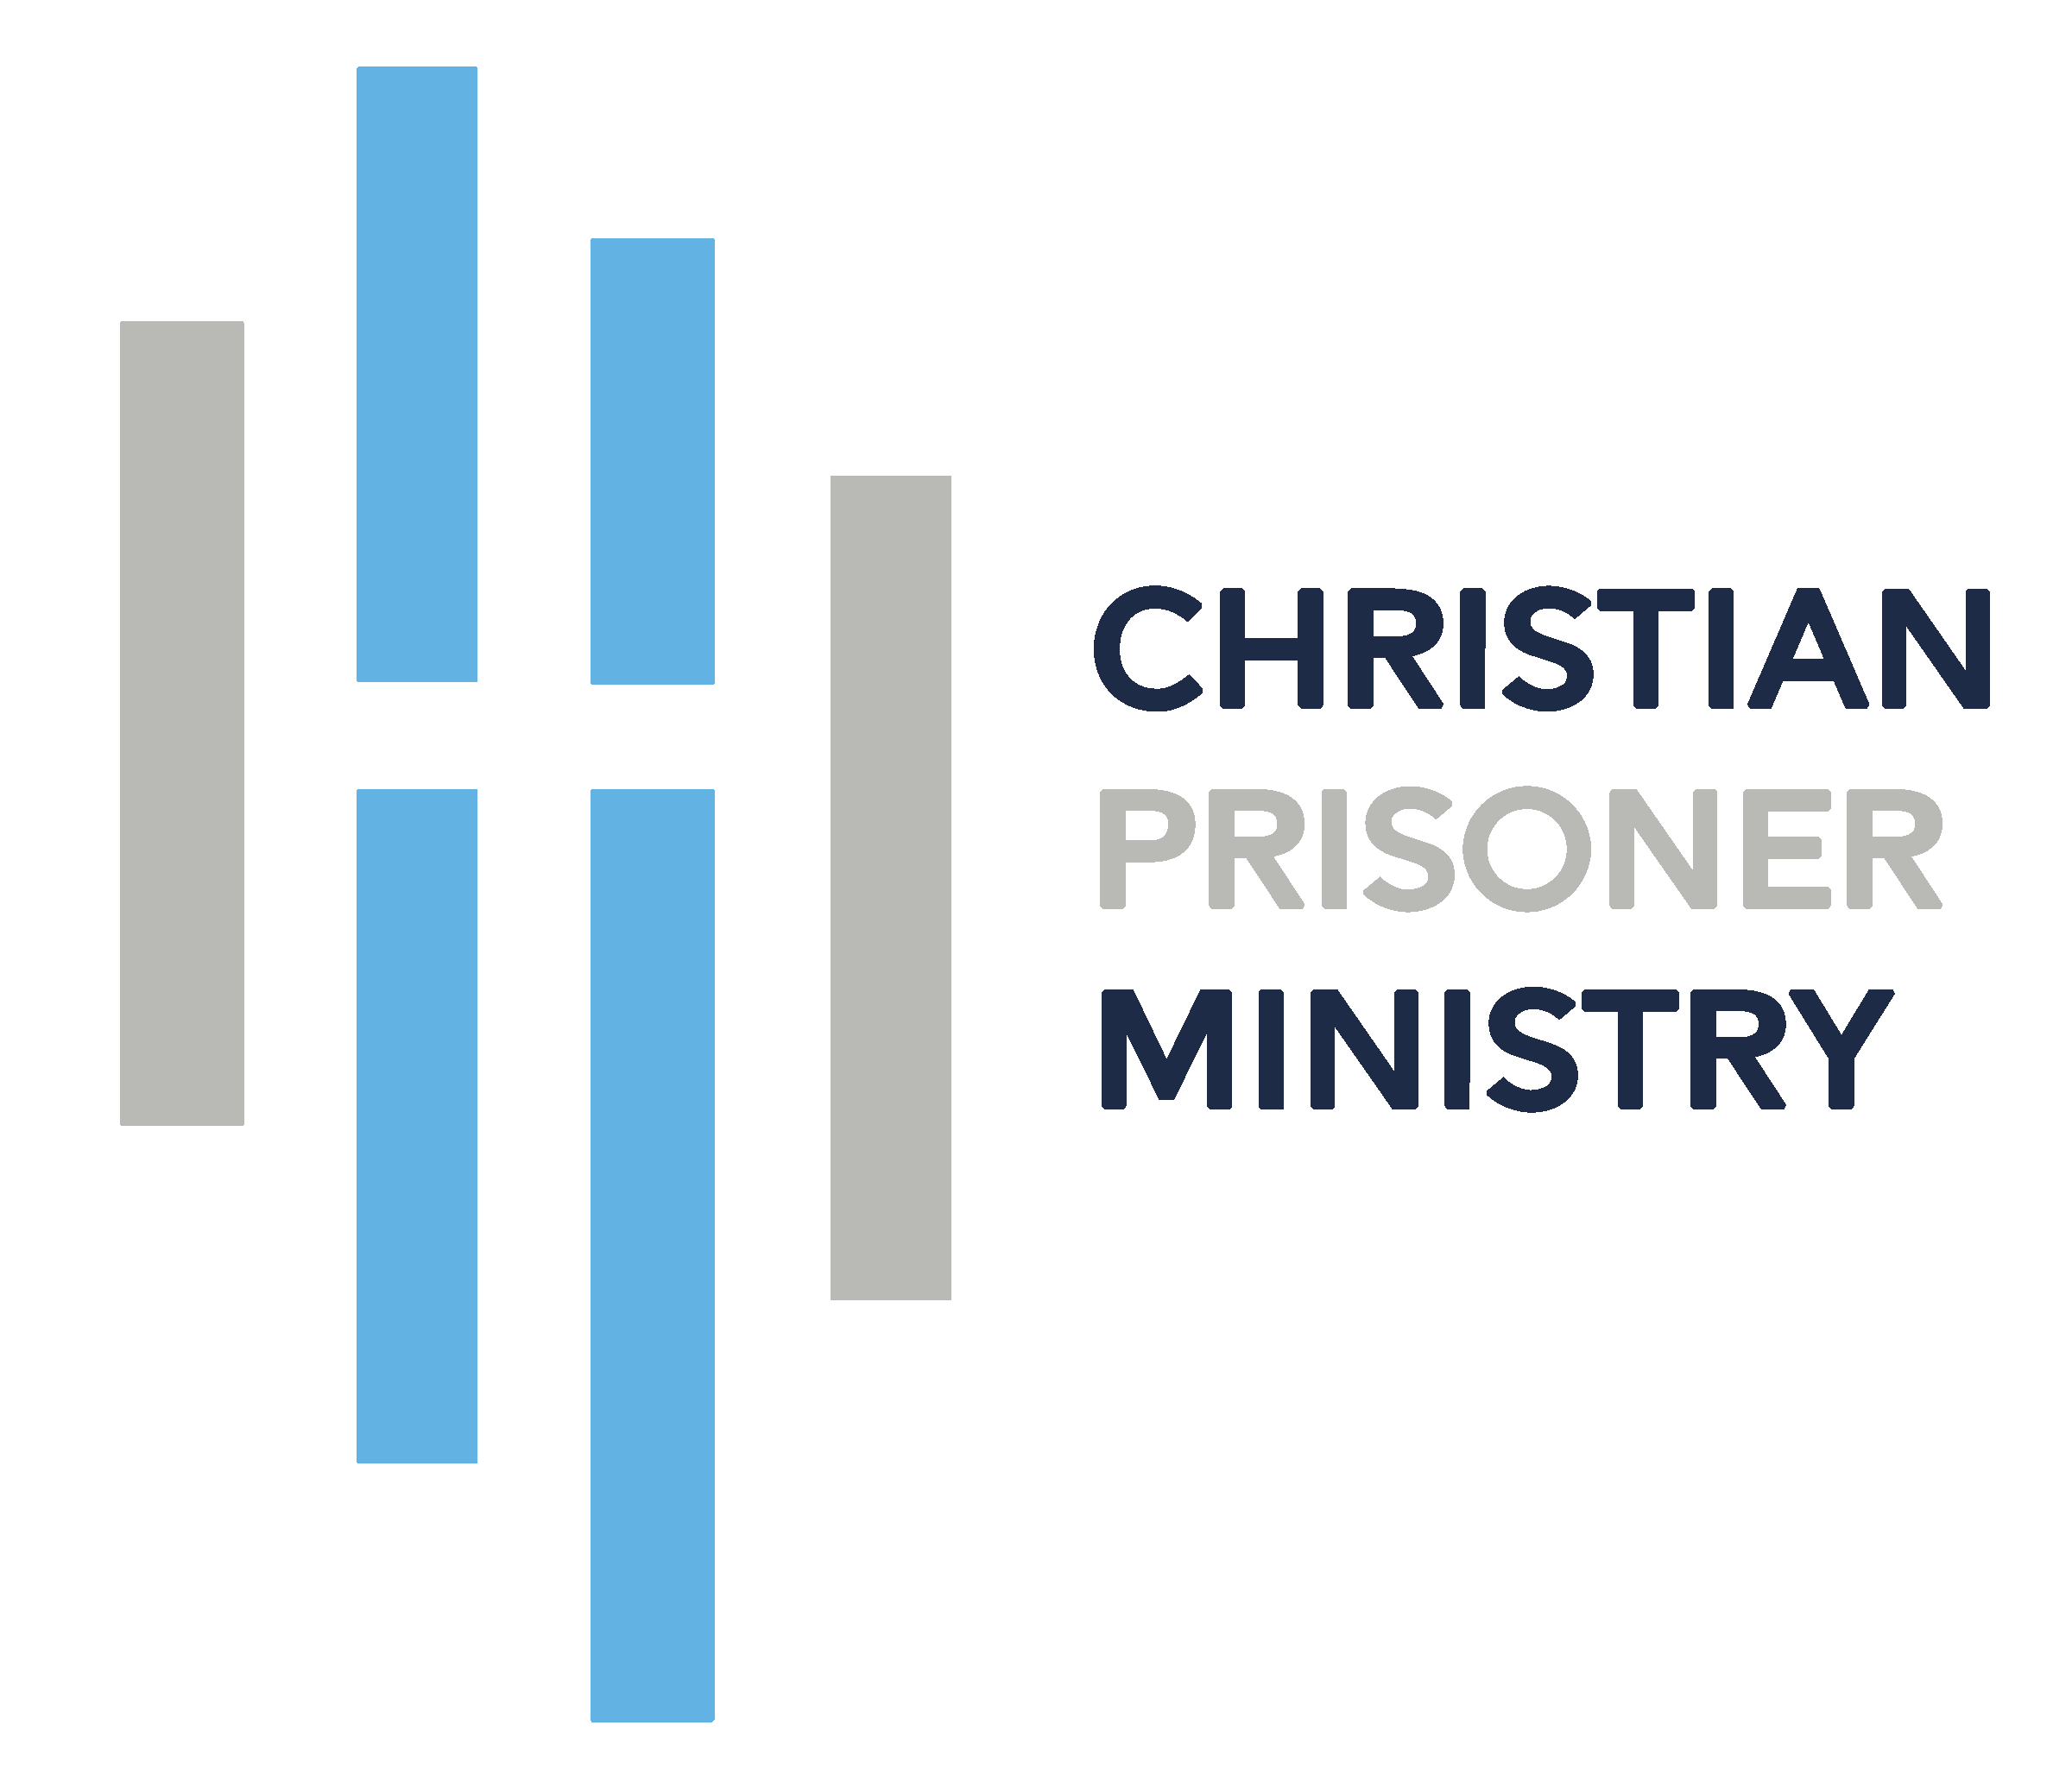 CHRISTIAN PRISONER MINISTRY